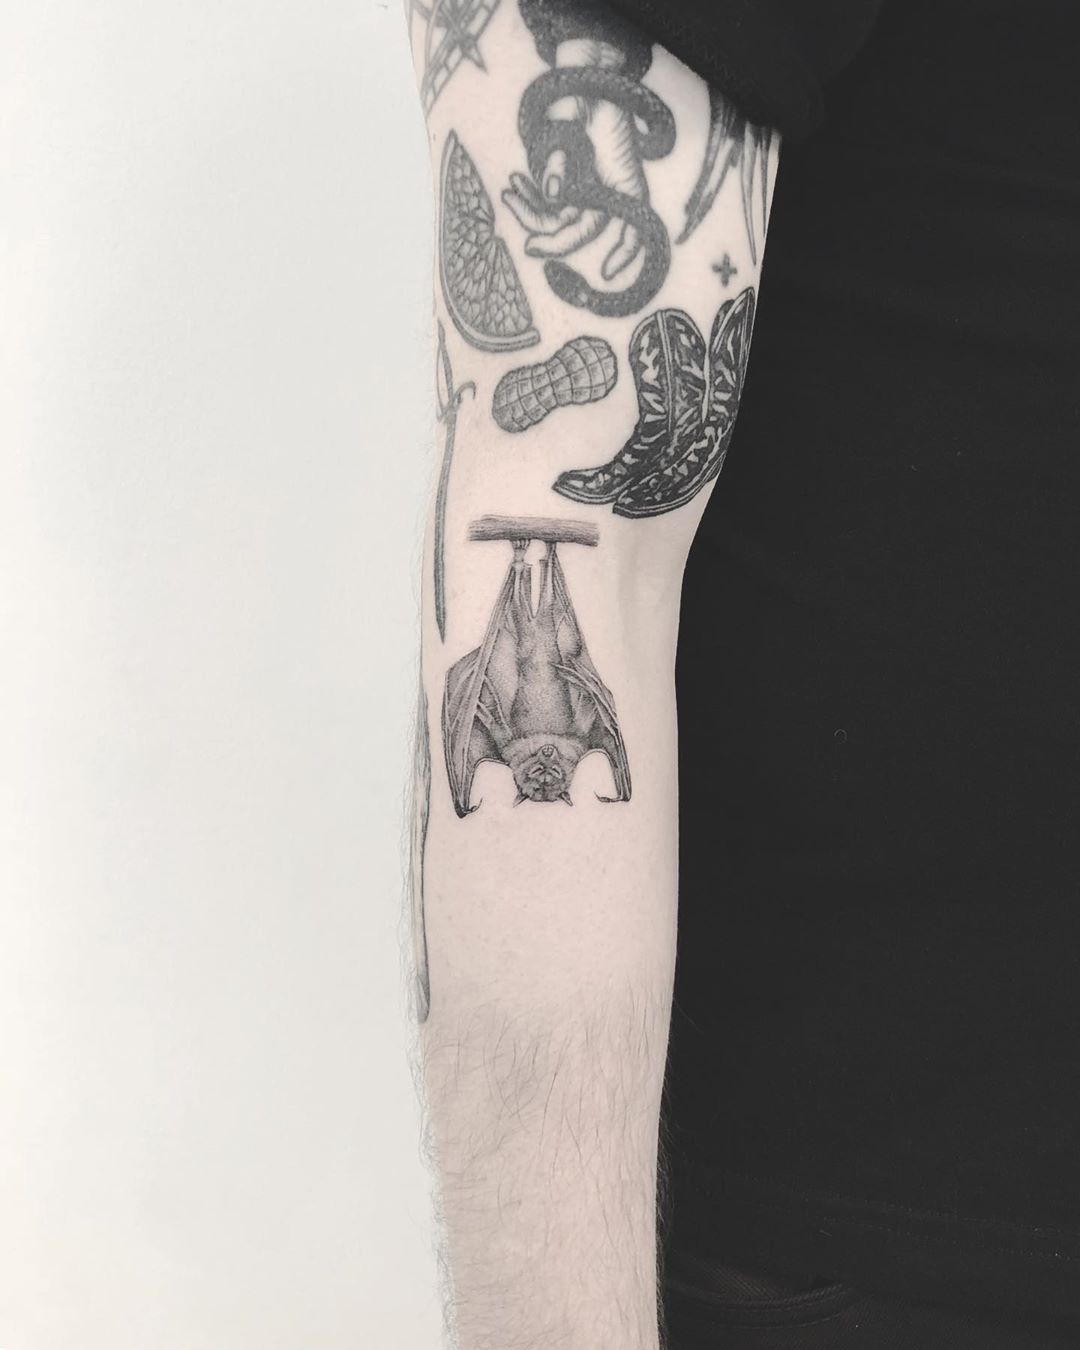 Sleepy bat tattoo by Annelie Fransson